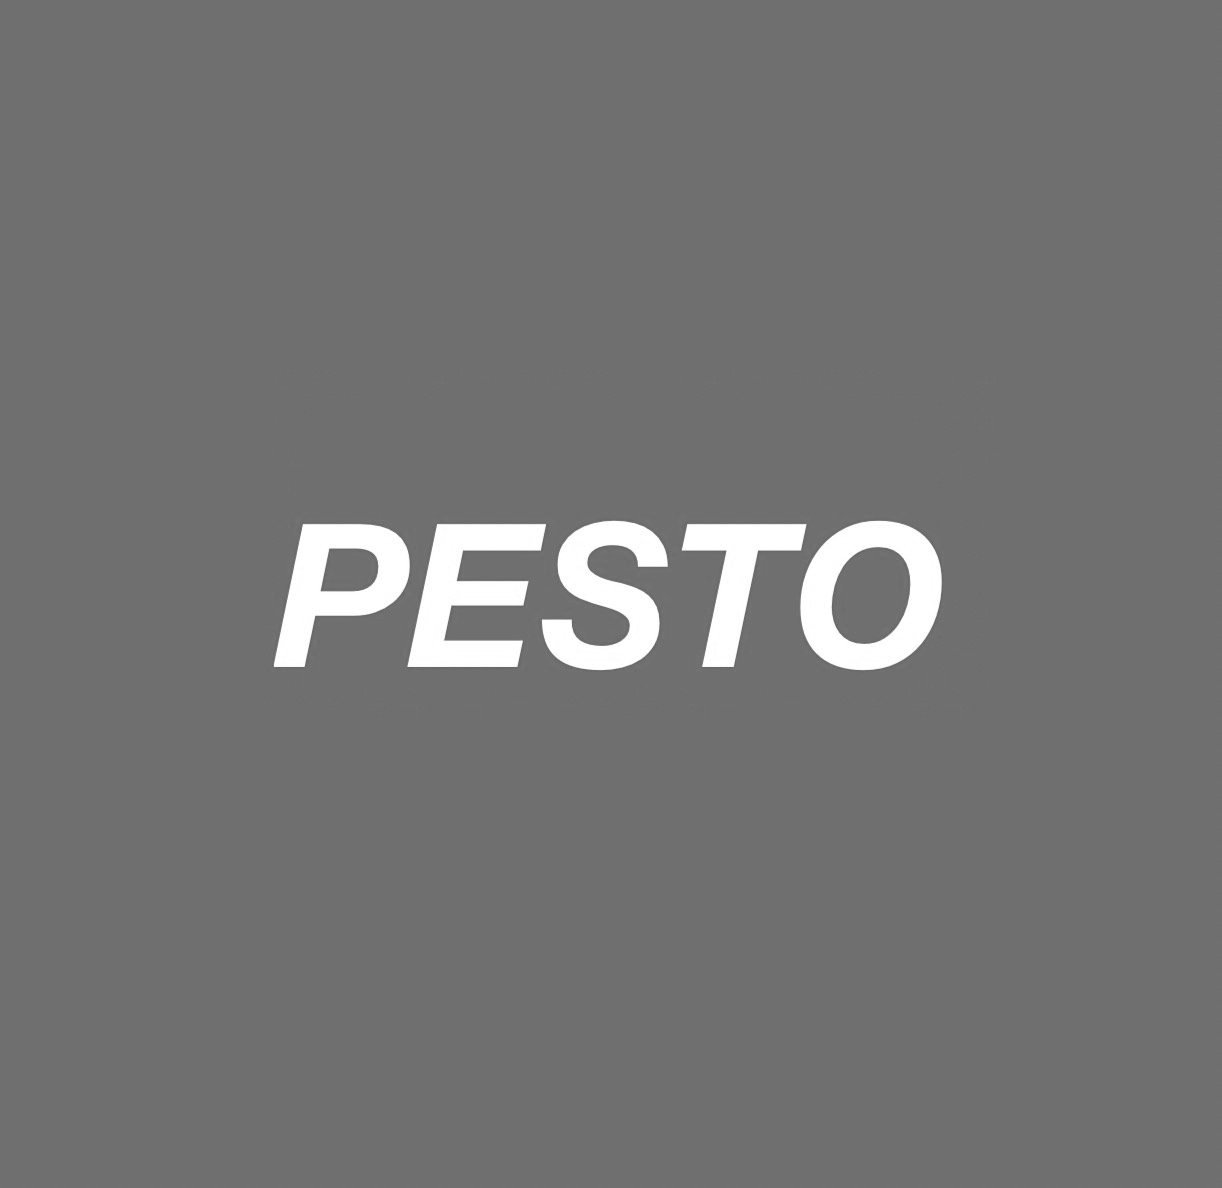 PestoLogo.jpg